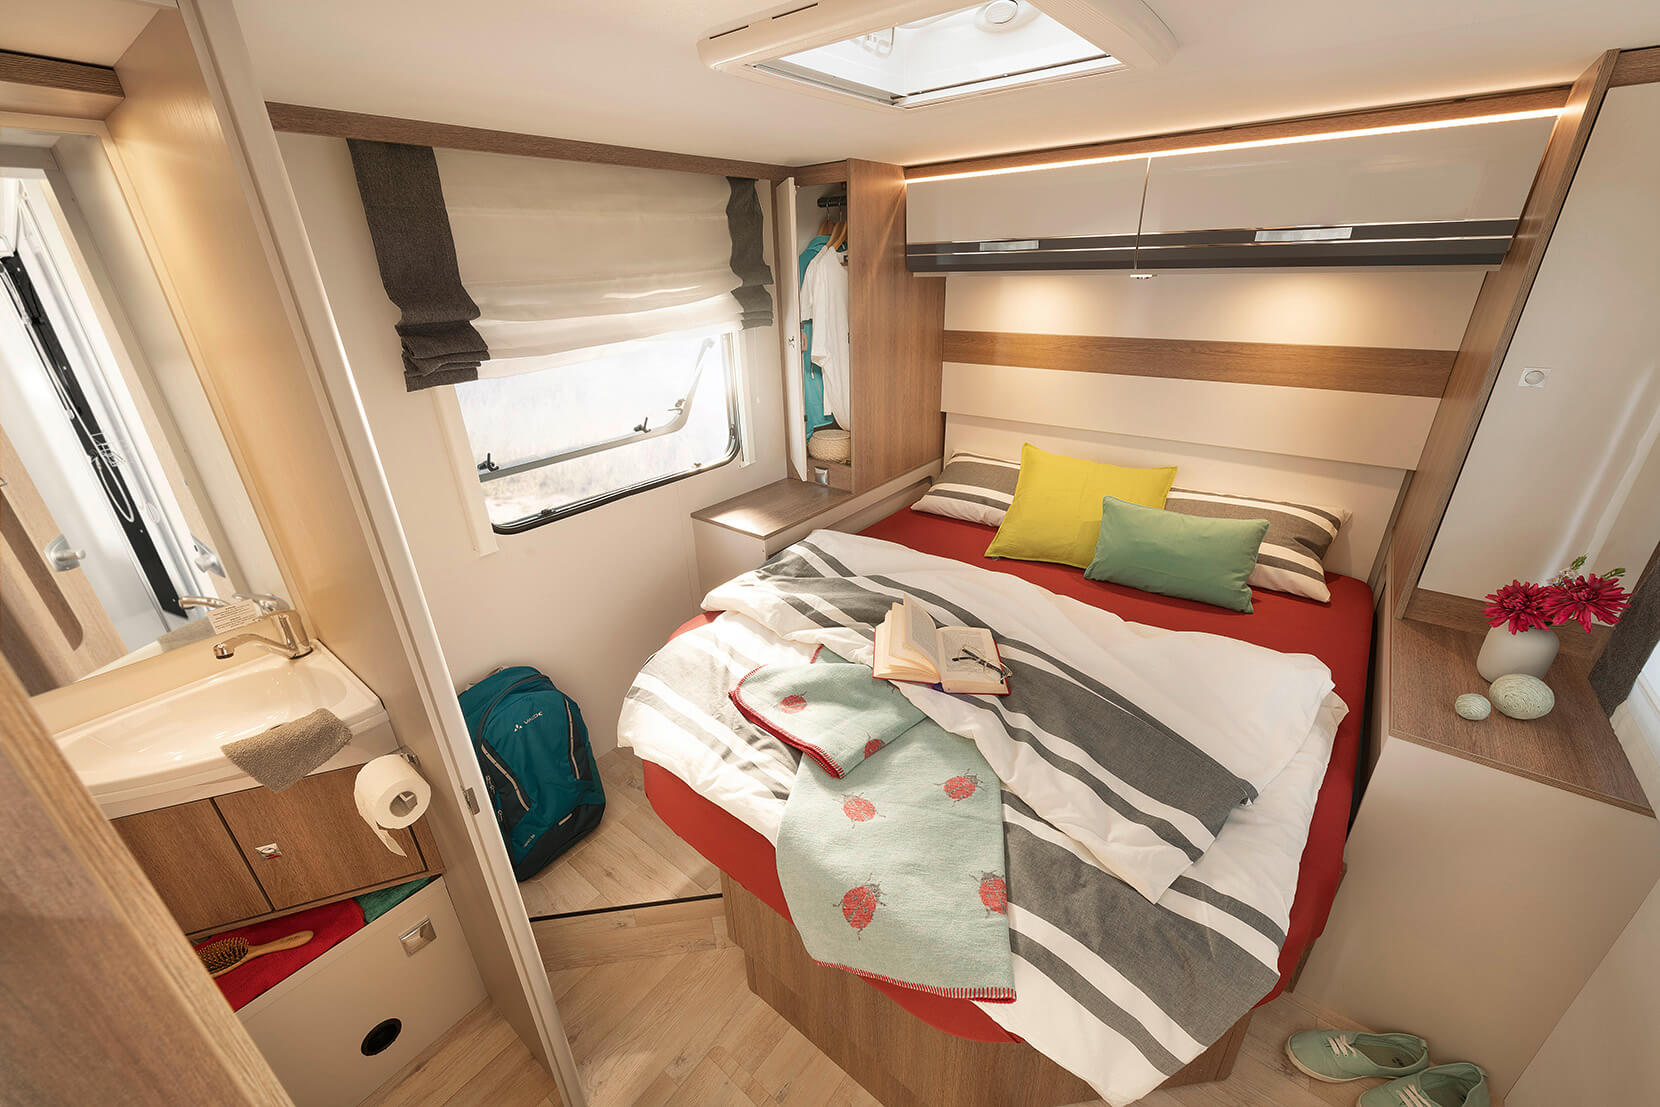 Łóżka 160x200 cm zapewniają wygodny dostęp z trzech stron. Opcjonalnie są nawet wyposażone w regulację wysokości • T 7057 DBM